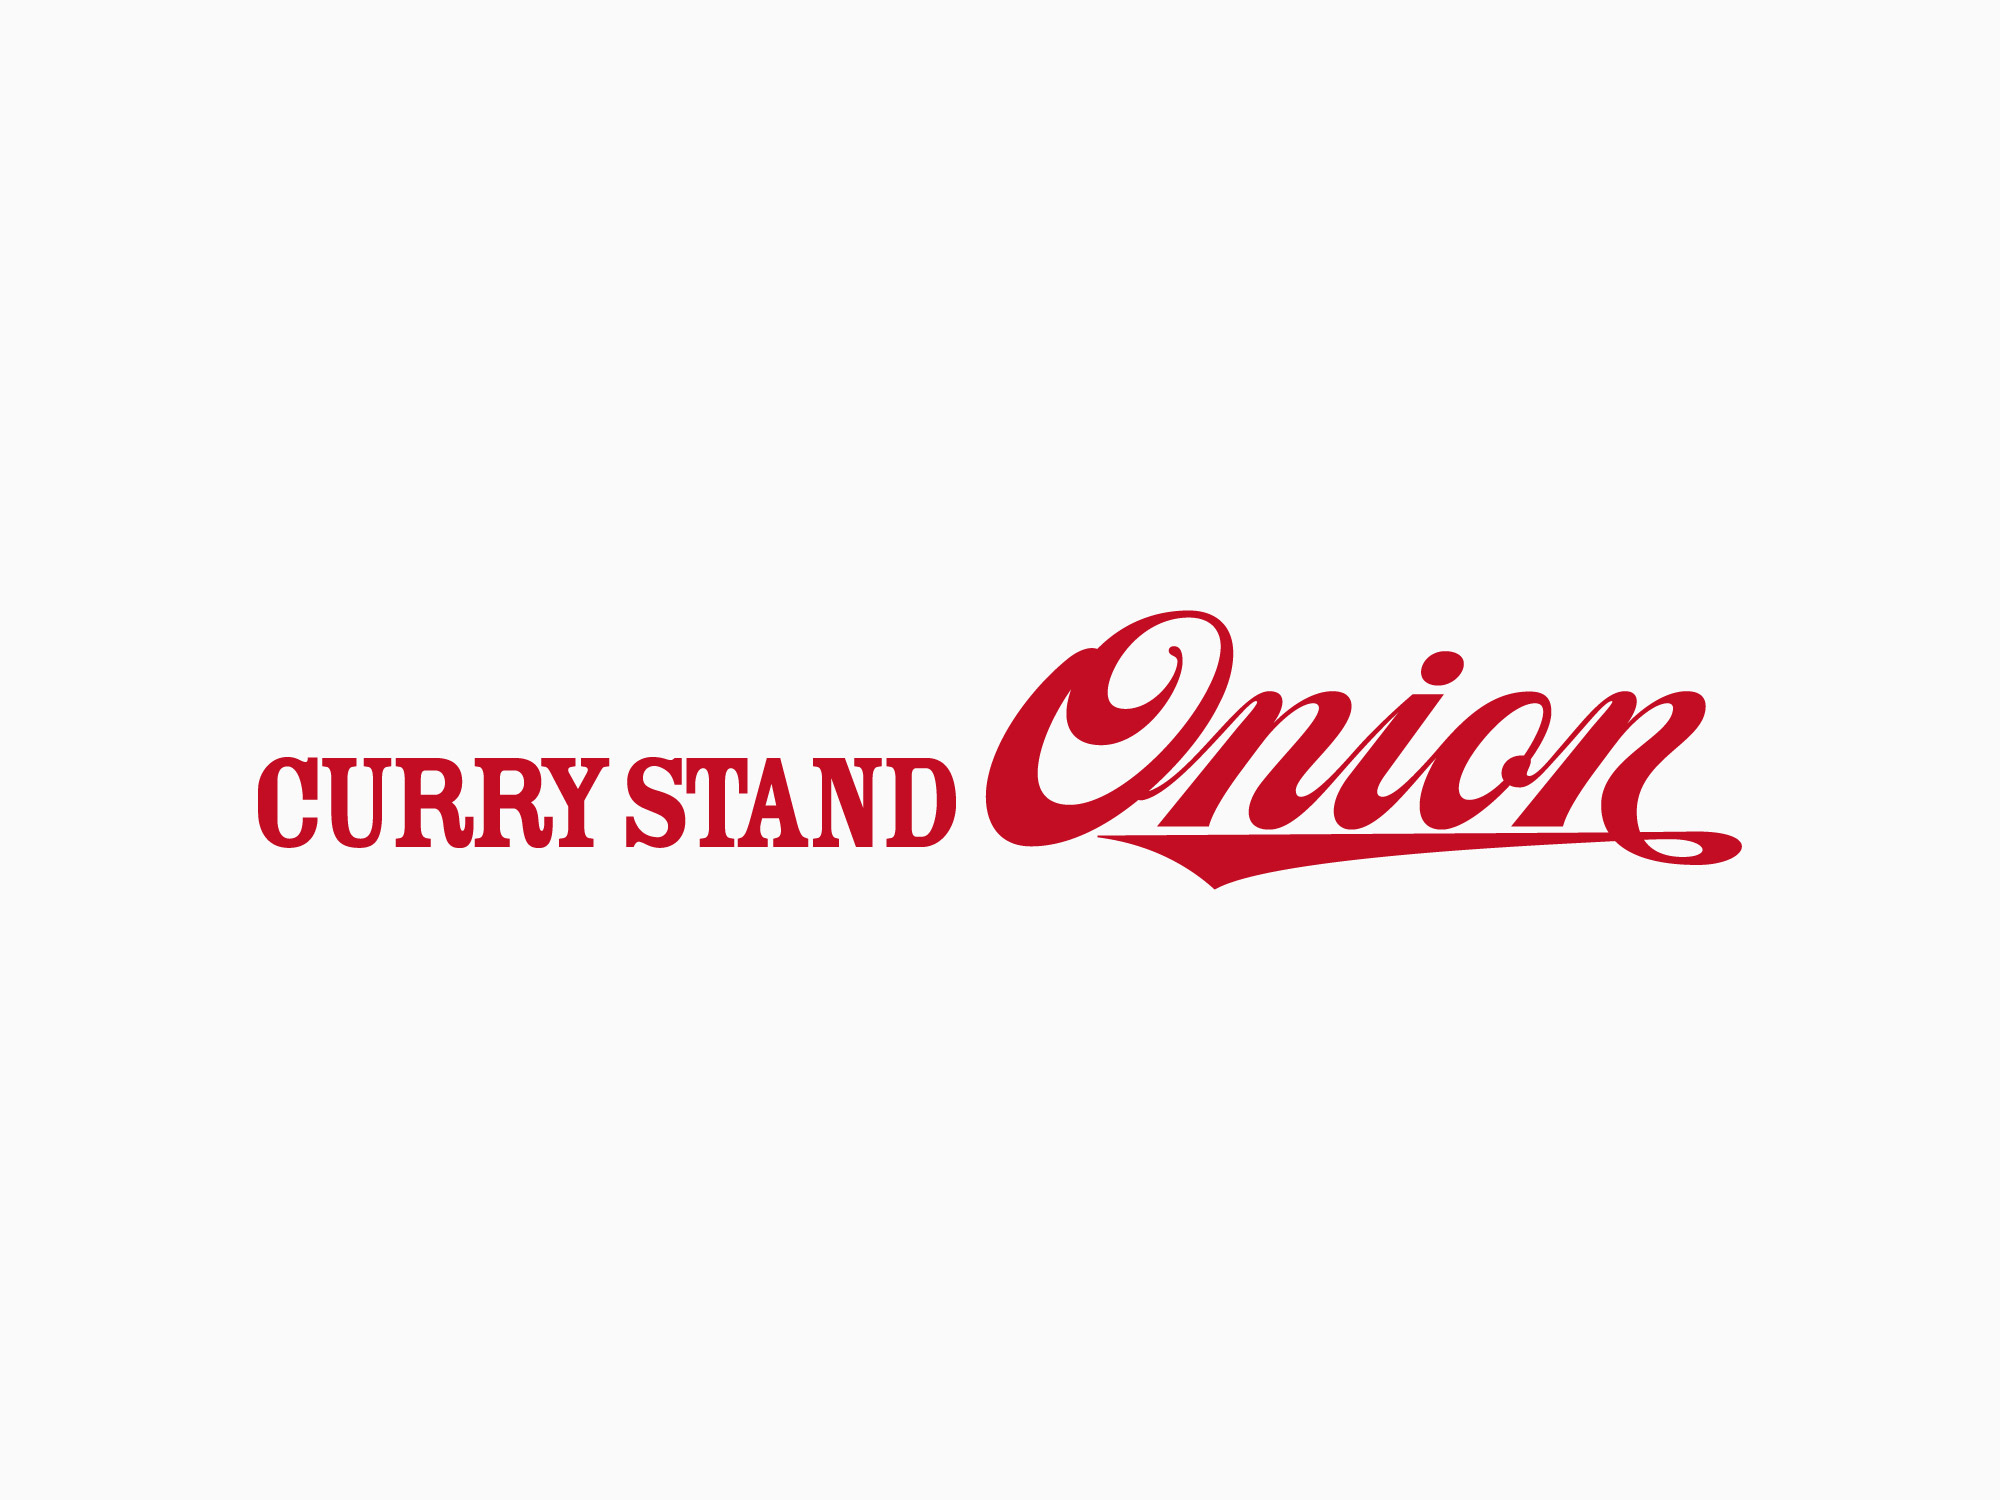 CurryStandOnion様のロゴデザインを担当させていただきました。